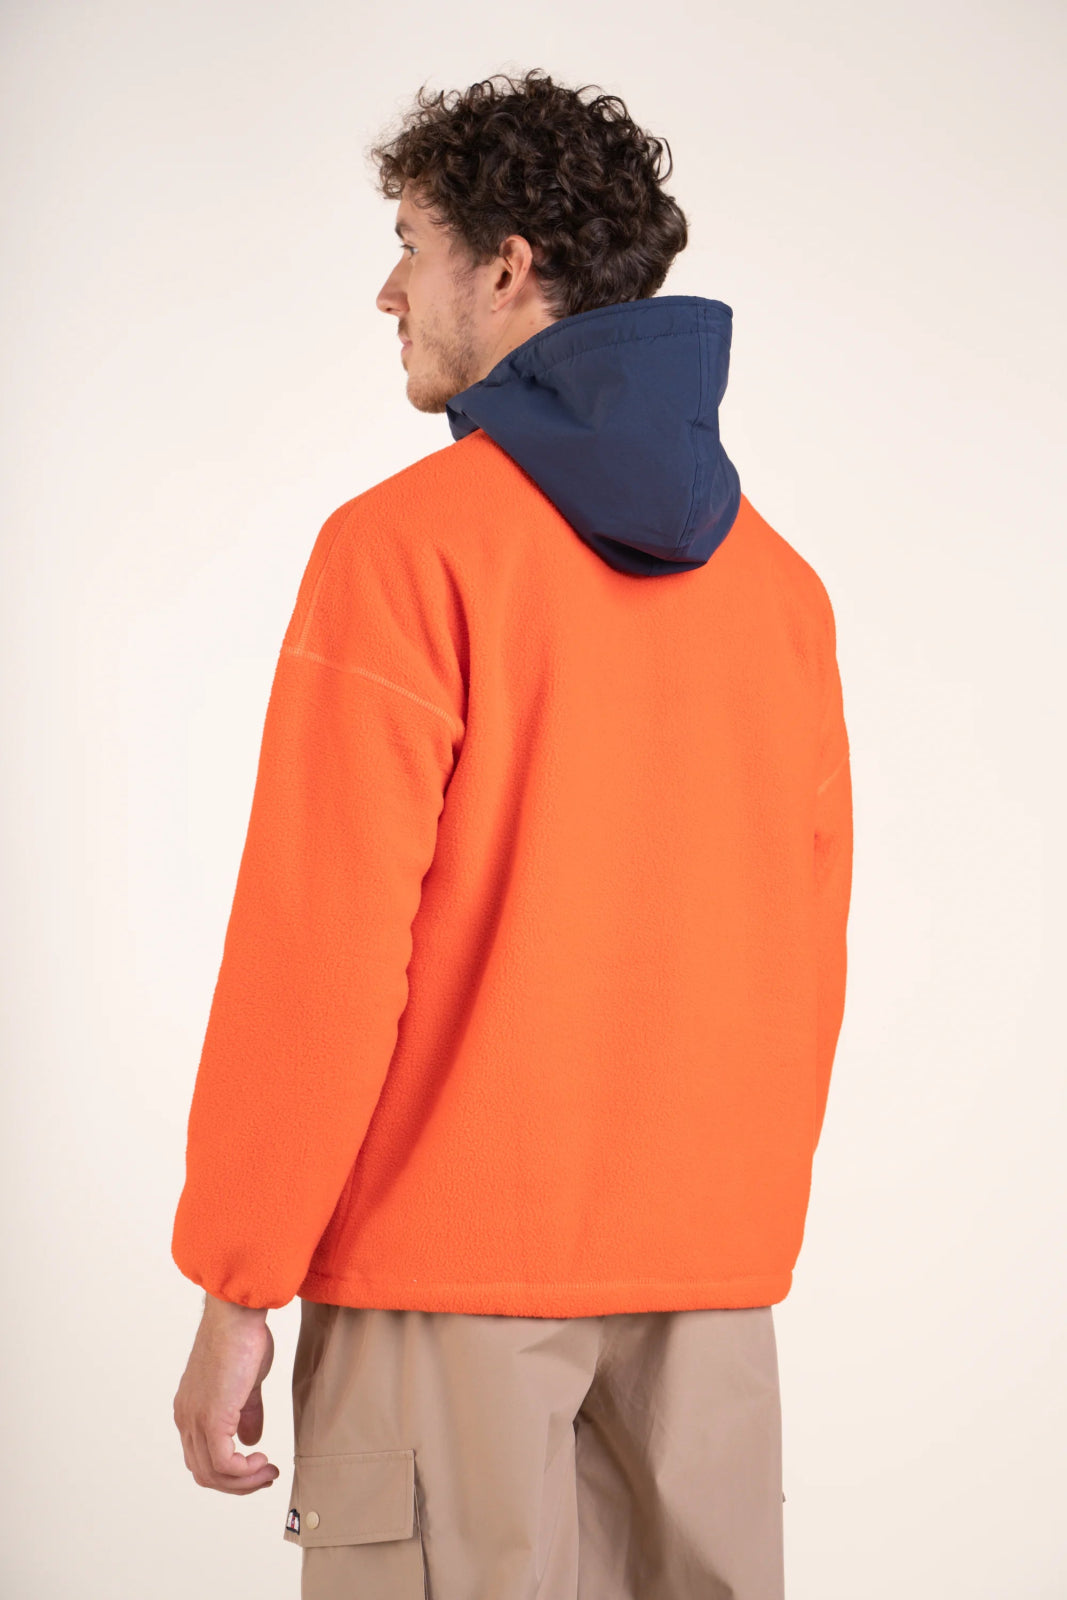 Belleville - Waterproof fleece hoodie - Flotte #couleur_tomate